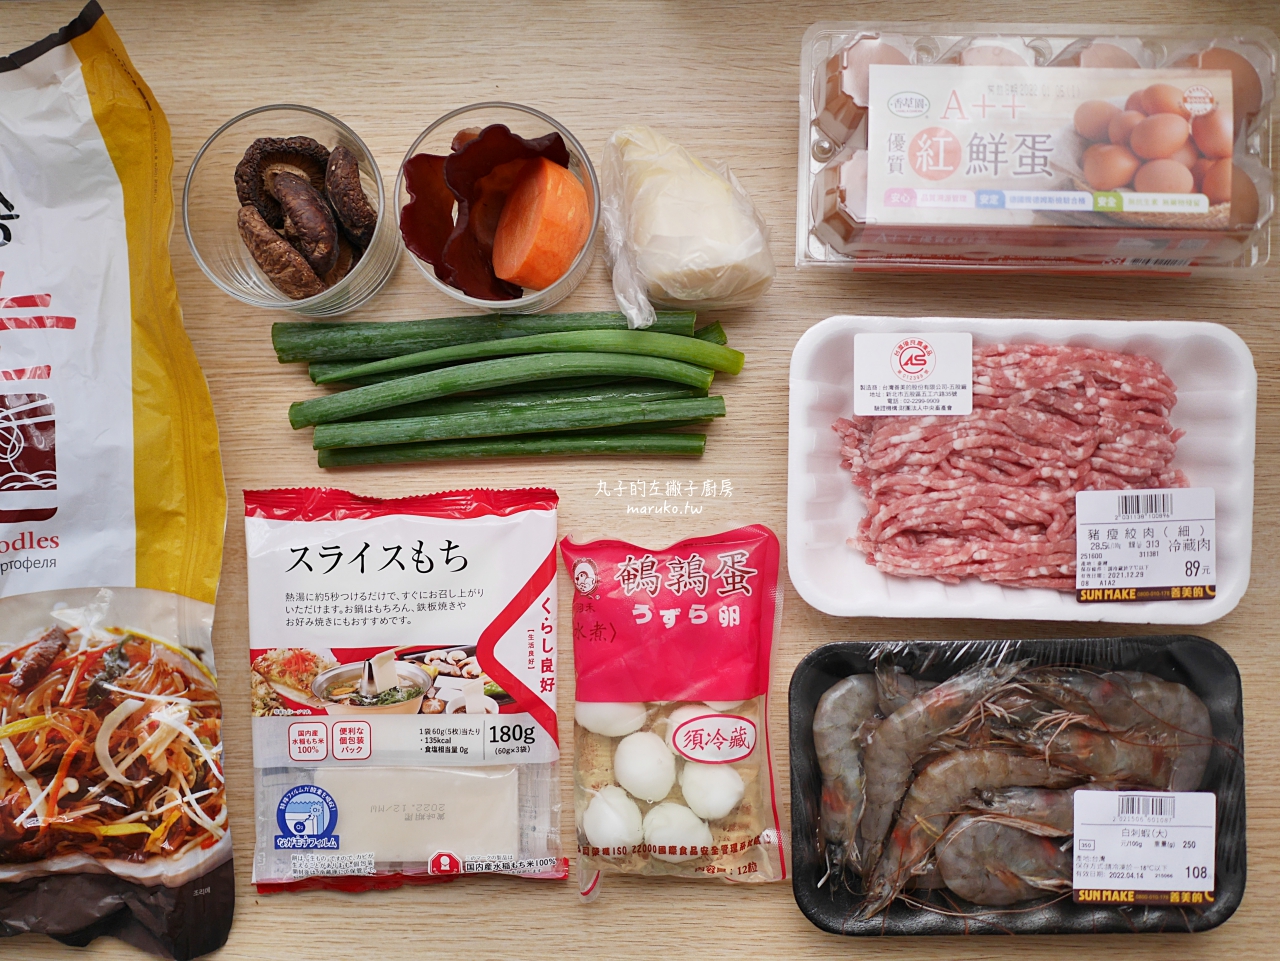 【食譜】章魚燒 簡單四種材料就能做章魚燒麵糊做法分享 @Maruko與美食有個約會